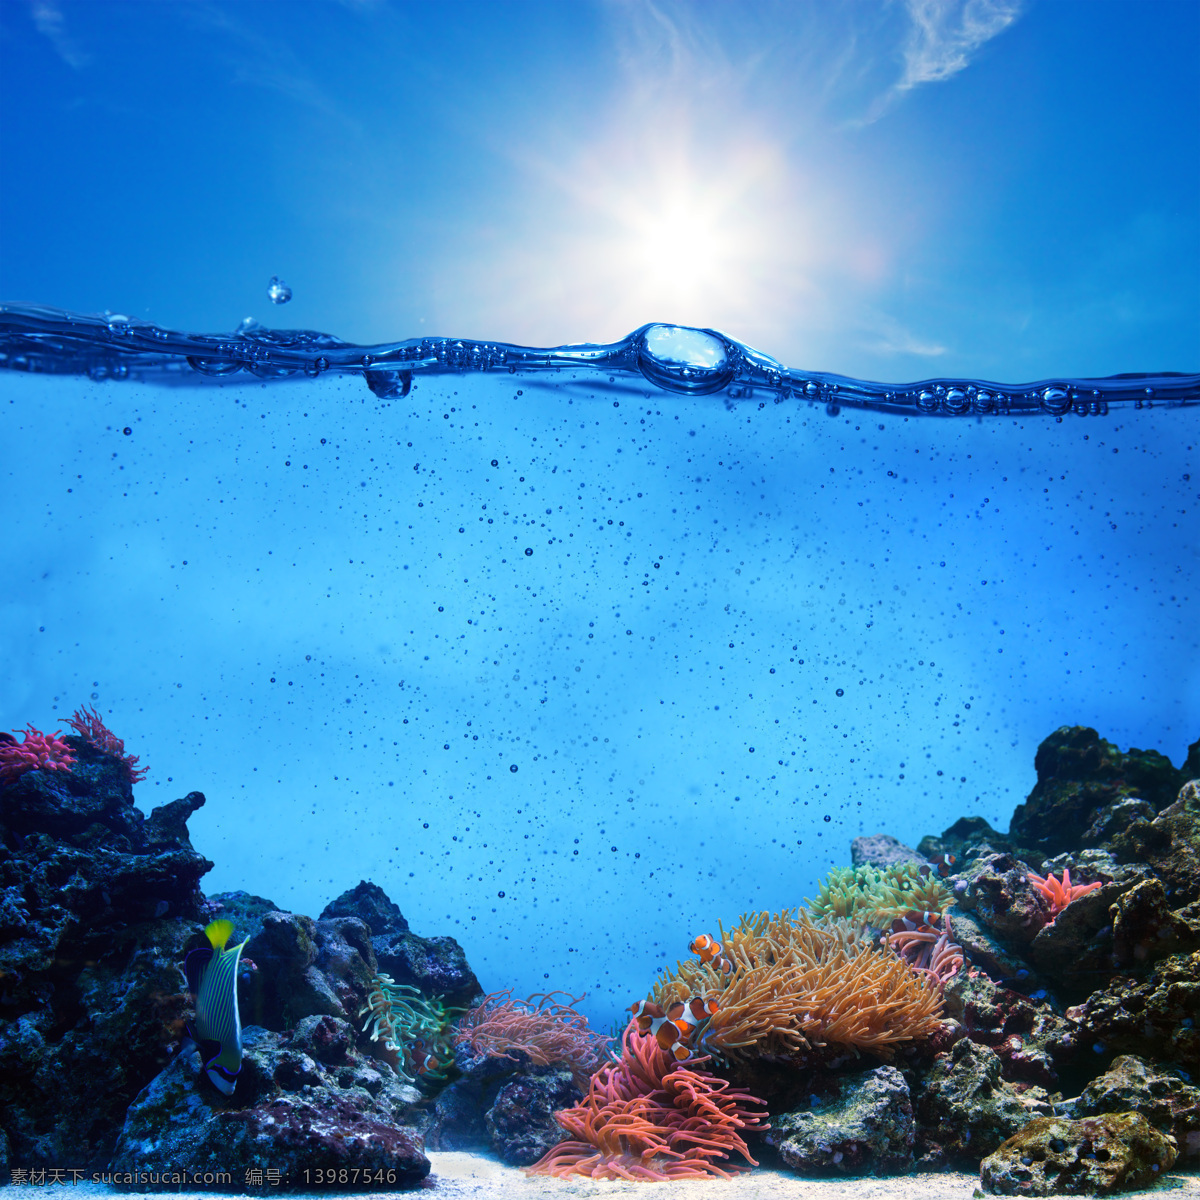 美丽 海底 生物 海底世界 水纹 蓝色海水 珊瑚 海水 海底生物 海藻 海洋生物 自然风景 自然景观